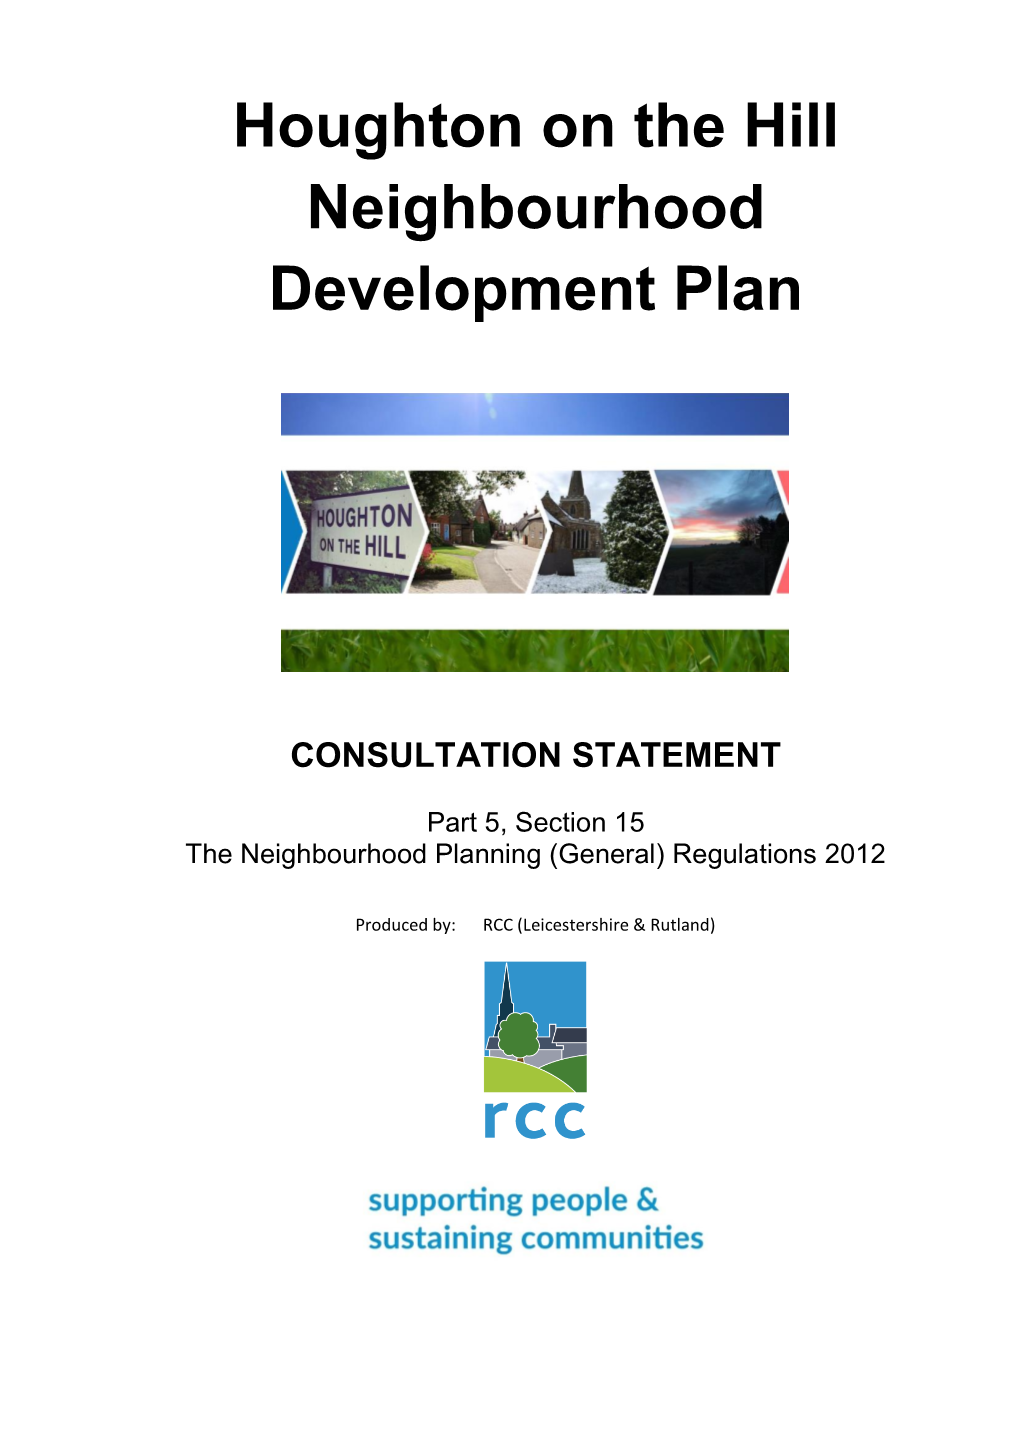 Houghton on the Hill Neighbourhood Development Plan